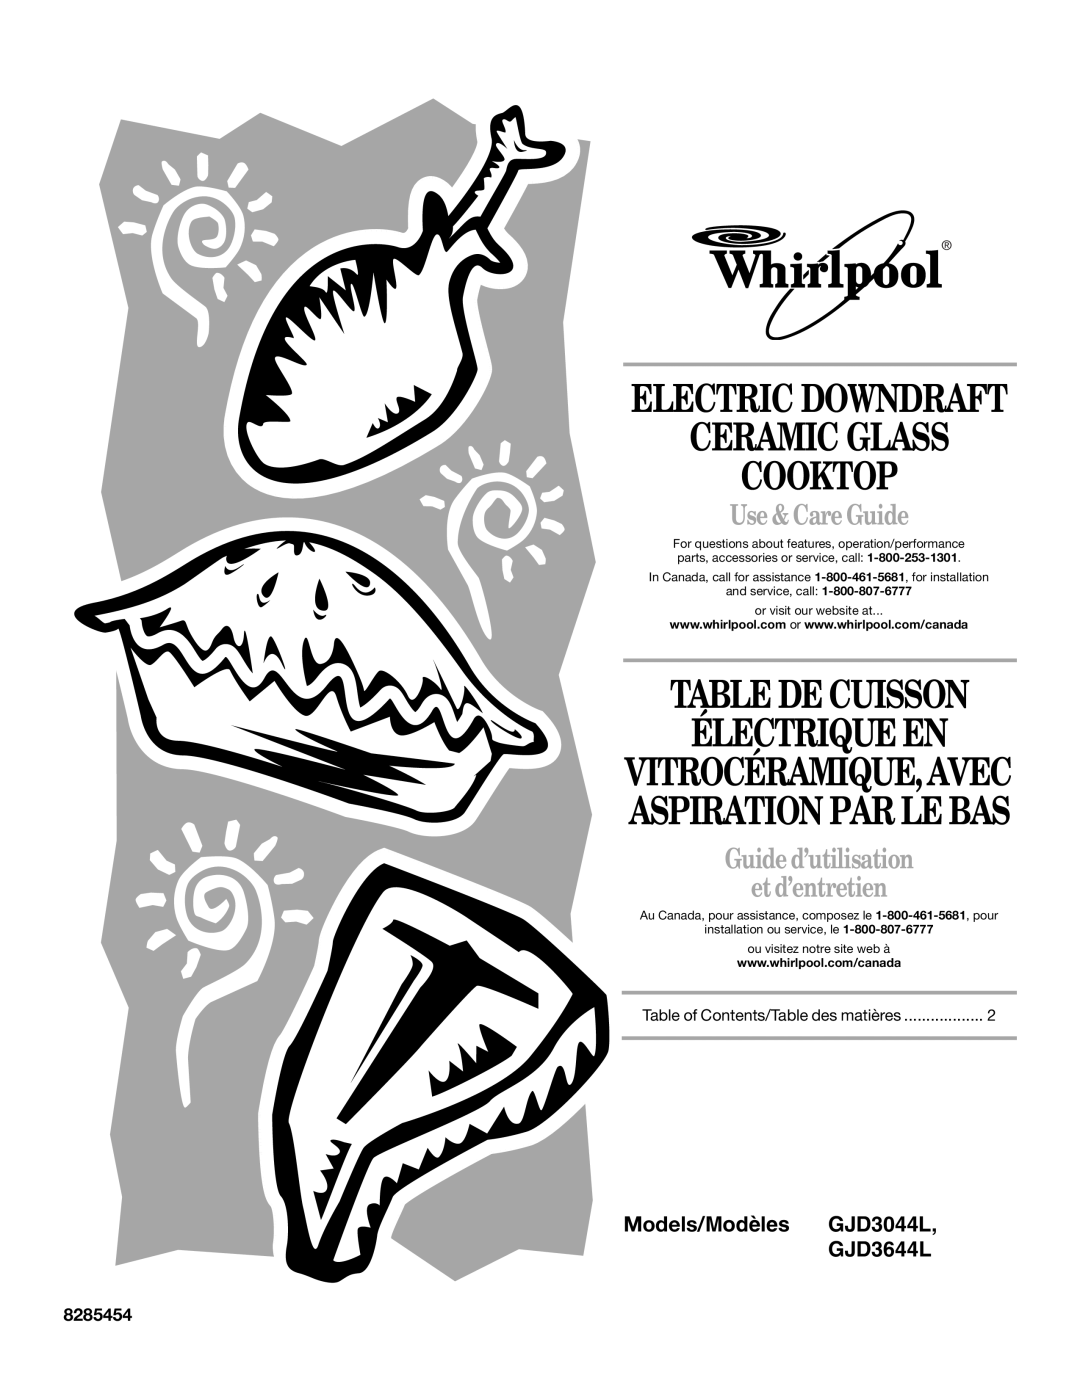 Whirlpool GJD3644L manual Ceramic Glass Cooktop, Table De Cuisson Électrique En, Electric Downdraft, Use & Care Guide 